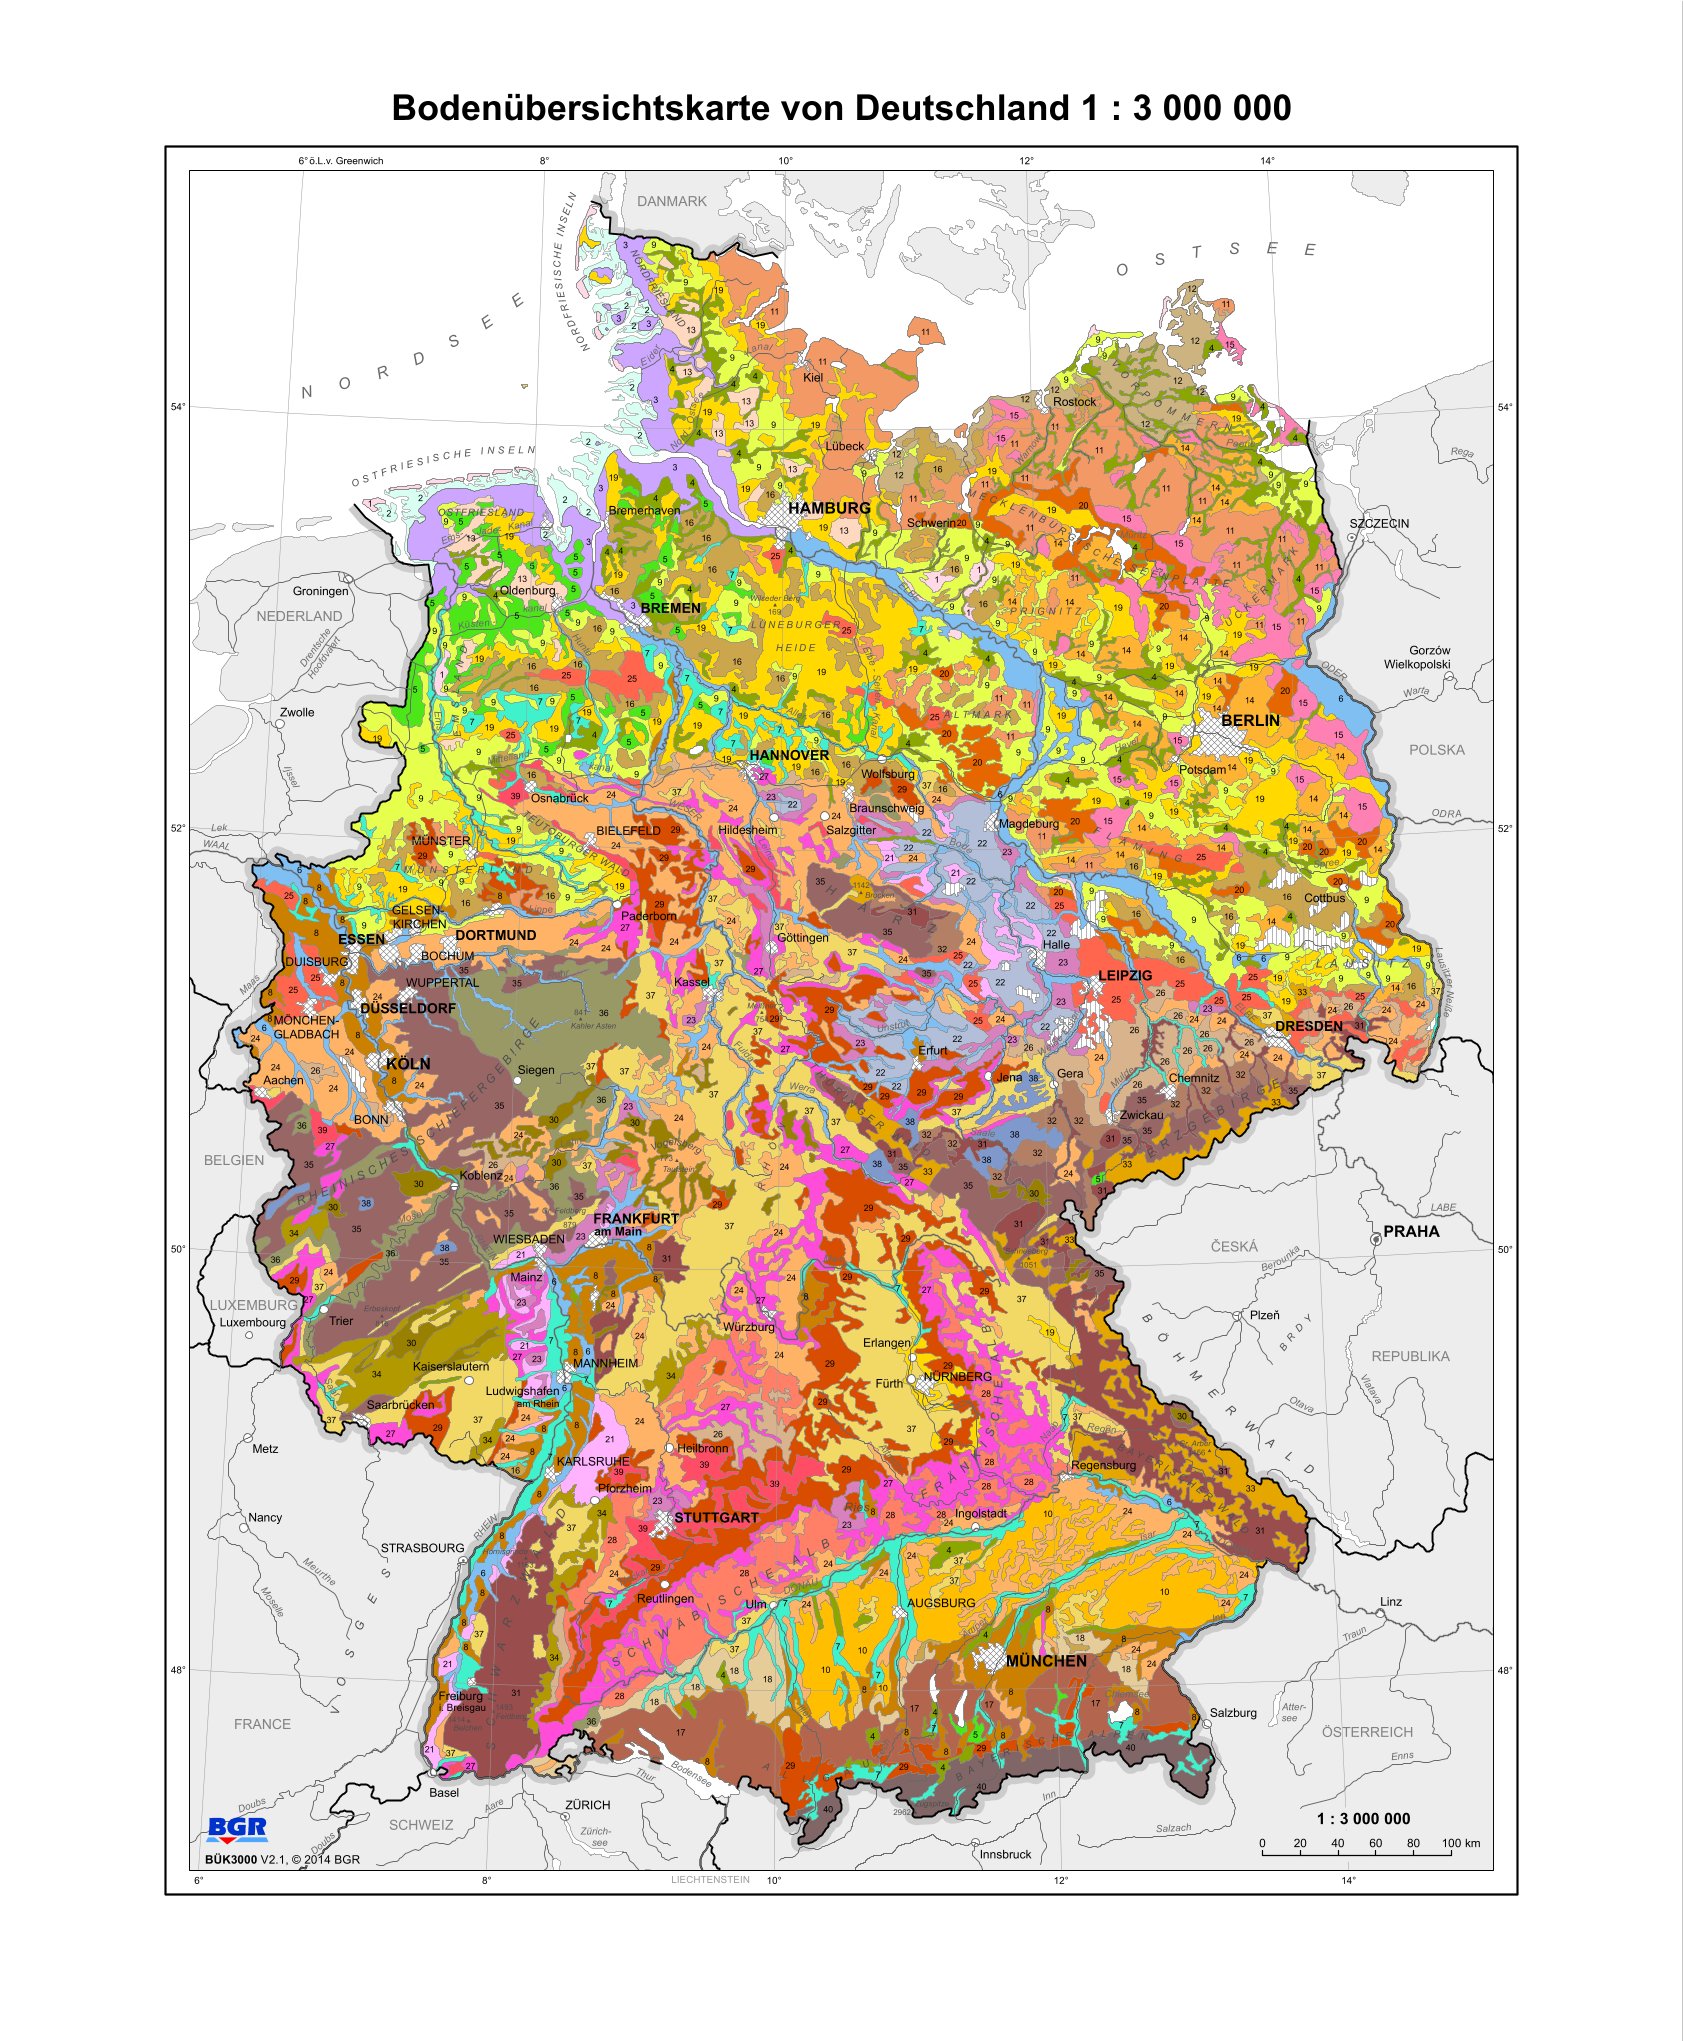 Bodenübersichtskarte Deutschlands von der Bundesanstalt für Geowissenschaften und Rohstoffe (BGR)